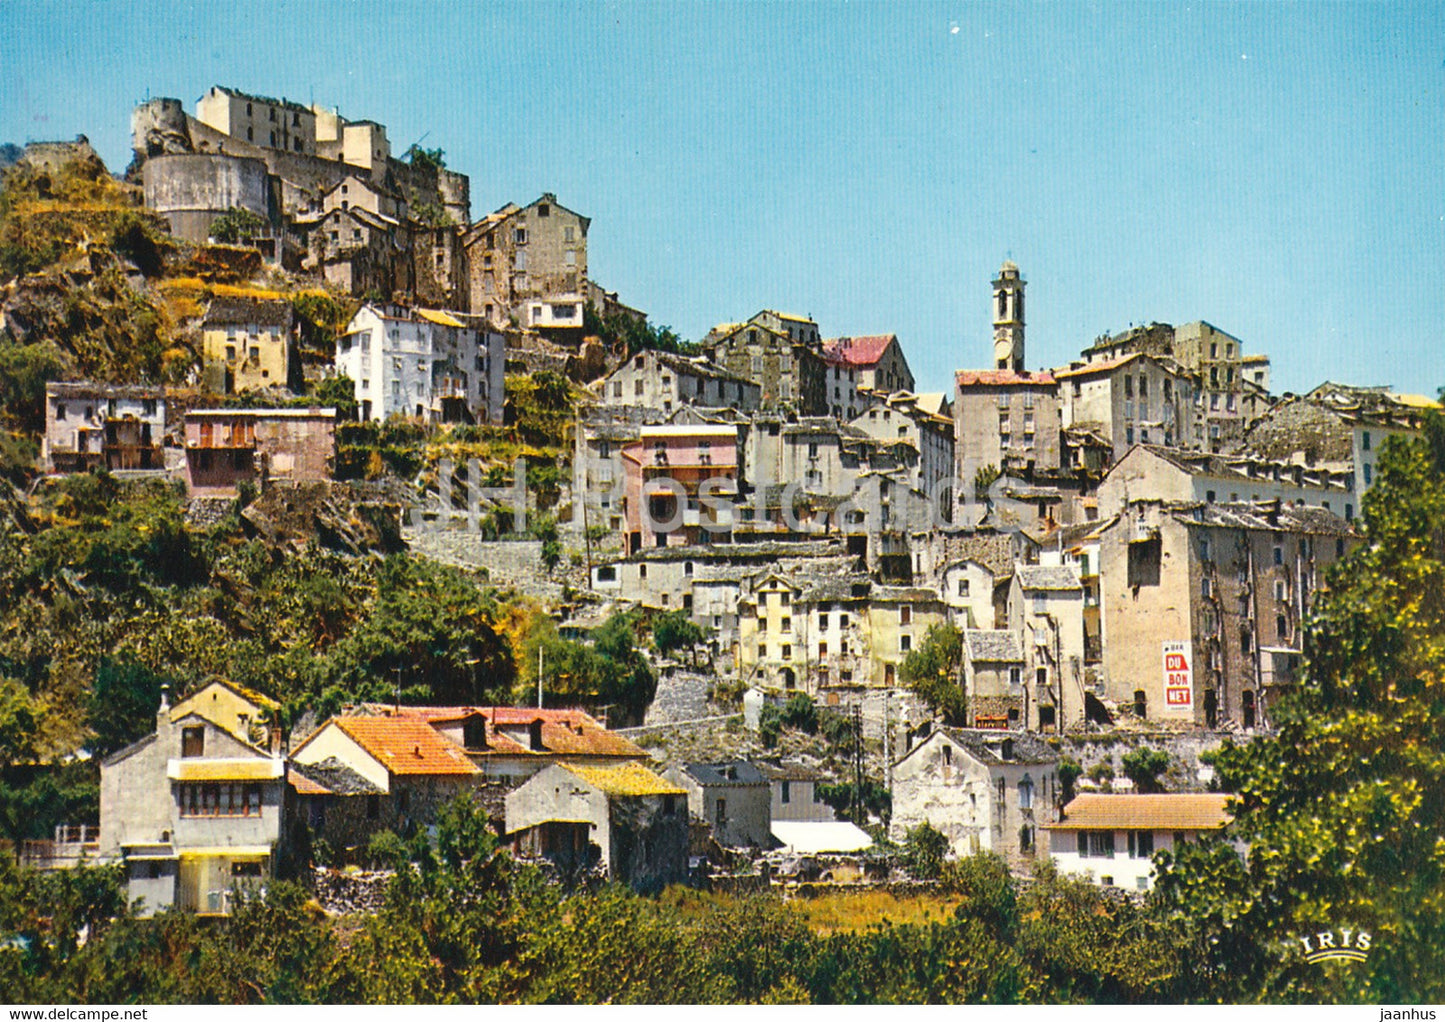 Corte - Entree de la vieille ville - France - unused - JH Postcards